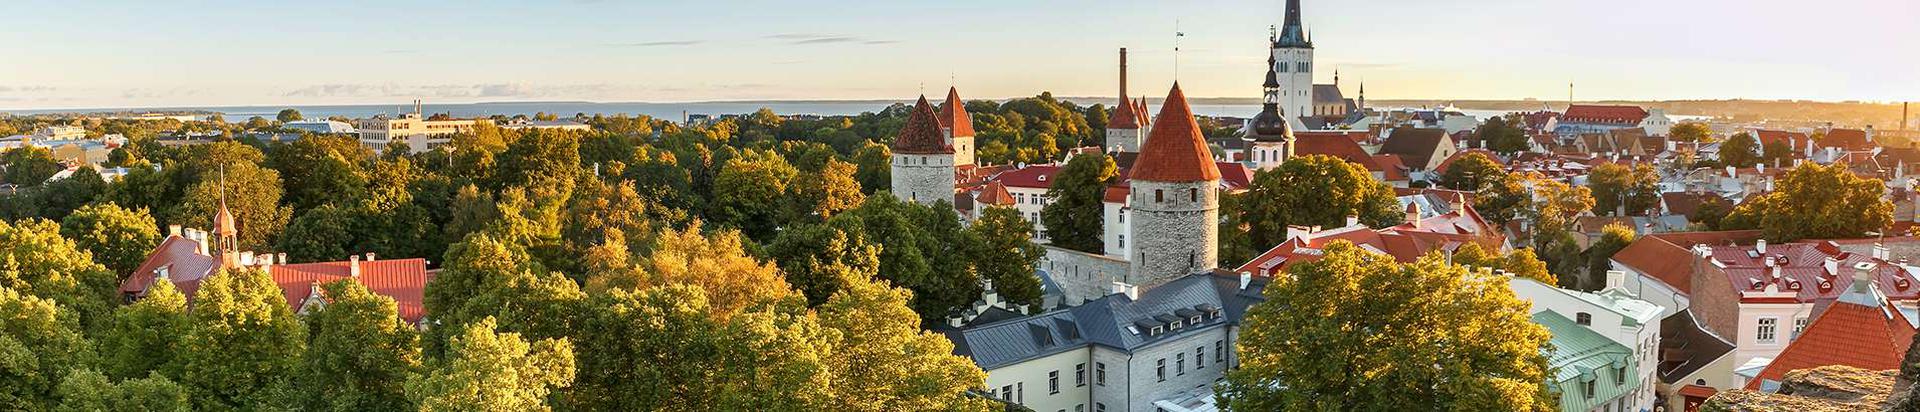 Lühikese jalutuskäigu kaugusel on Tallinna vanalinn, Kalamaja, Telliskivi loomelinnak ja Balti jaama turg.